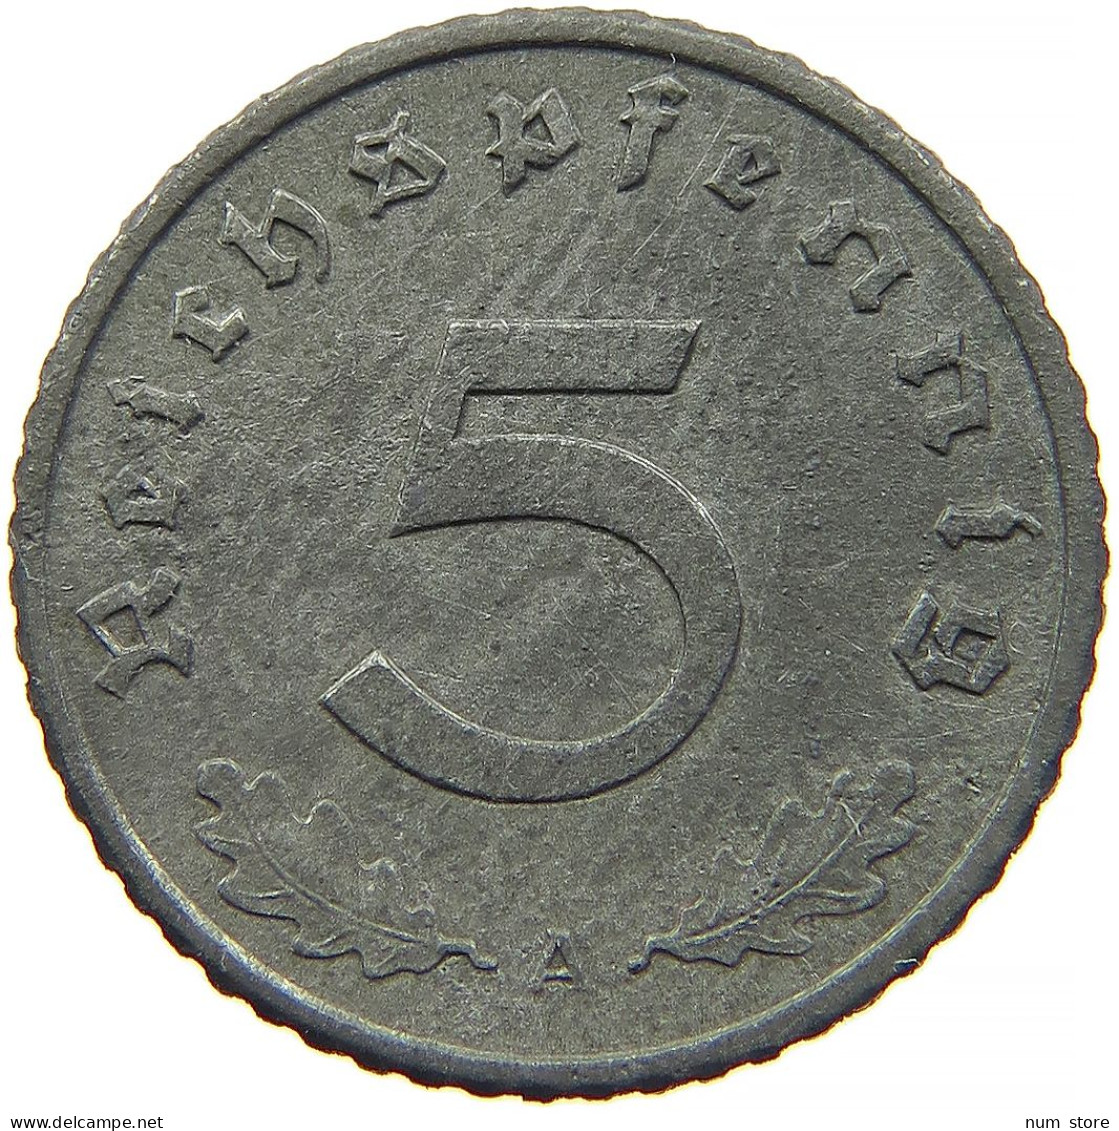 GERMANY 5 REICHSPFENNIG 1942 A #s091 0819 - 5 Reichspfennig